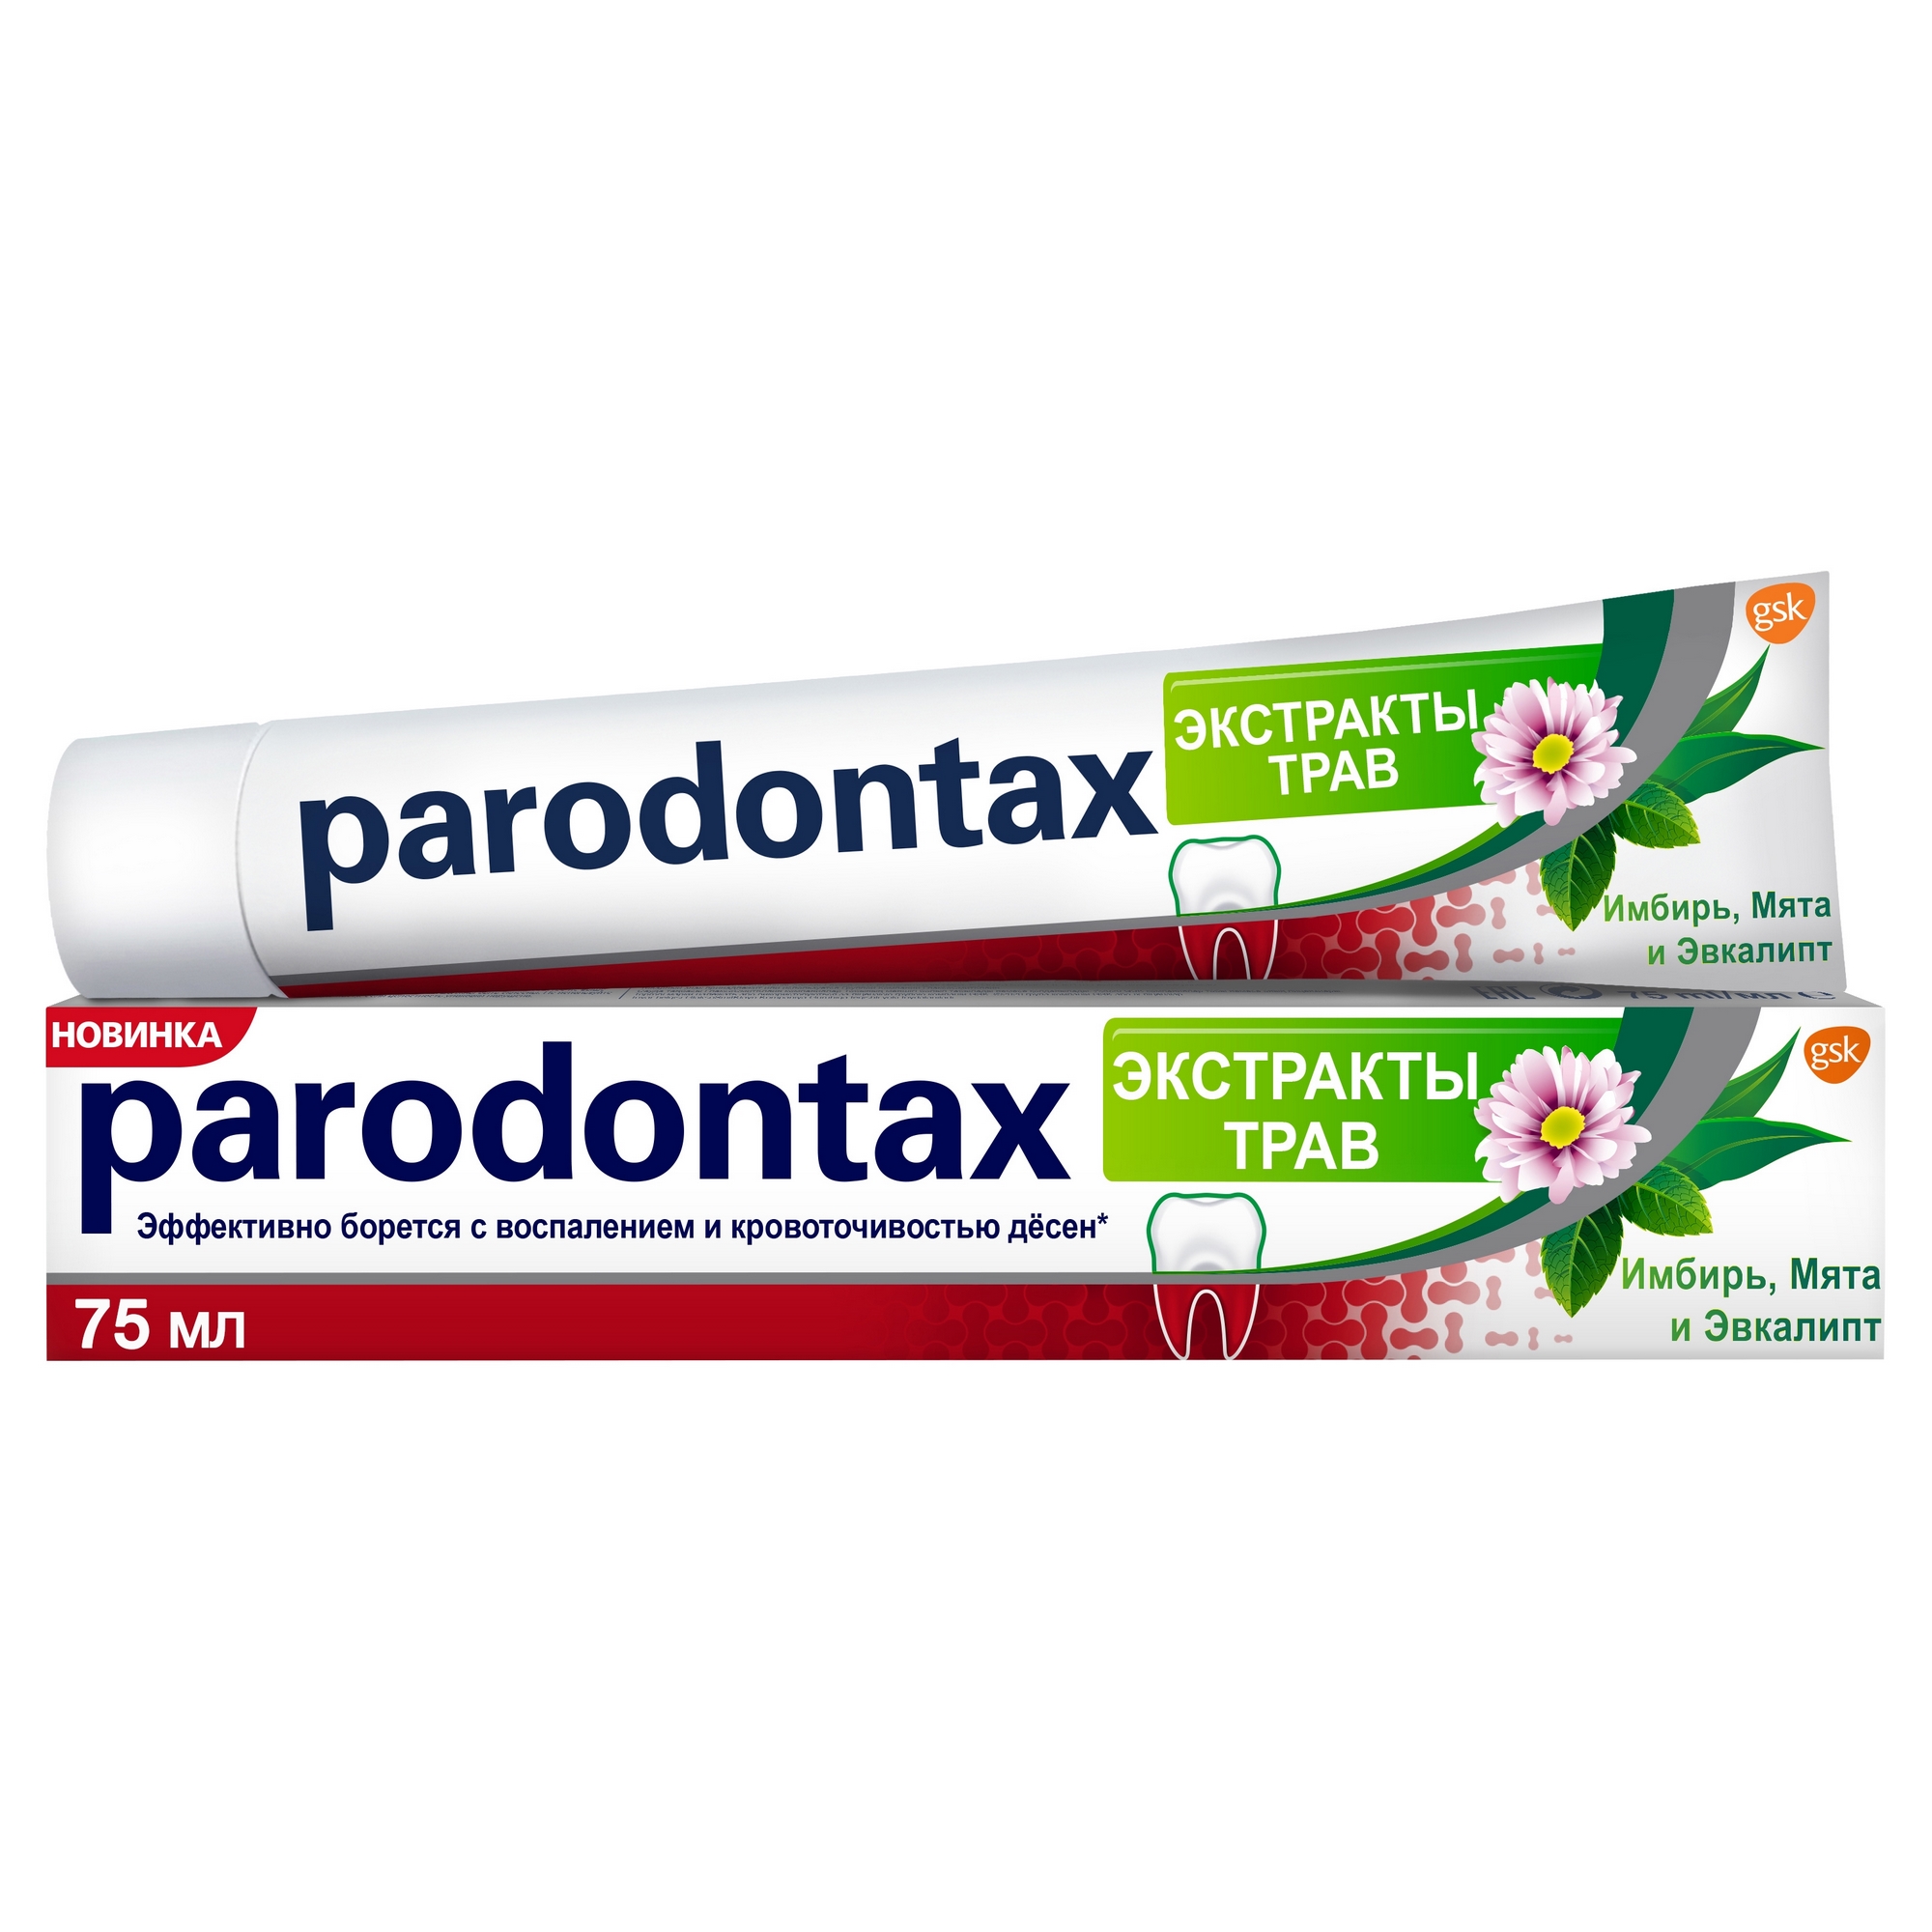 Зубная паста Parodontax Экстракты трав 75 мл зубная паста parodontax ультра очищение 75 мл